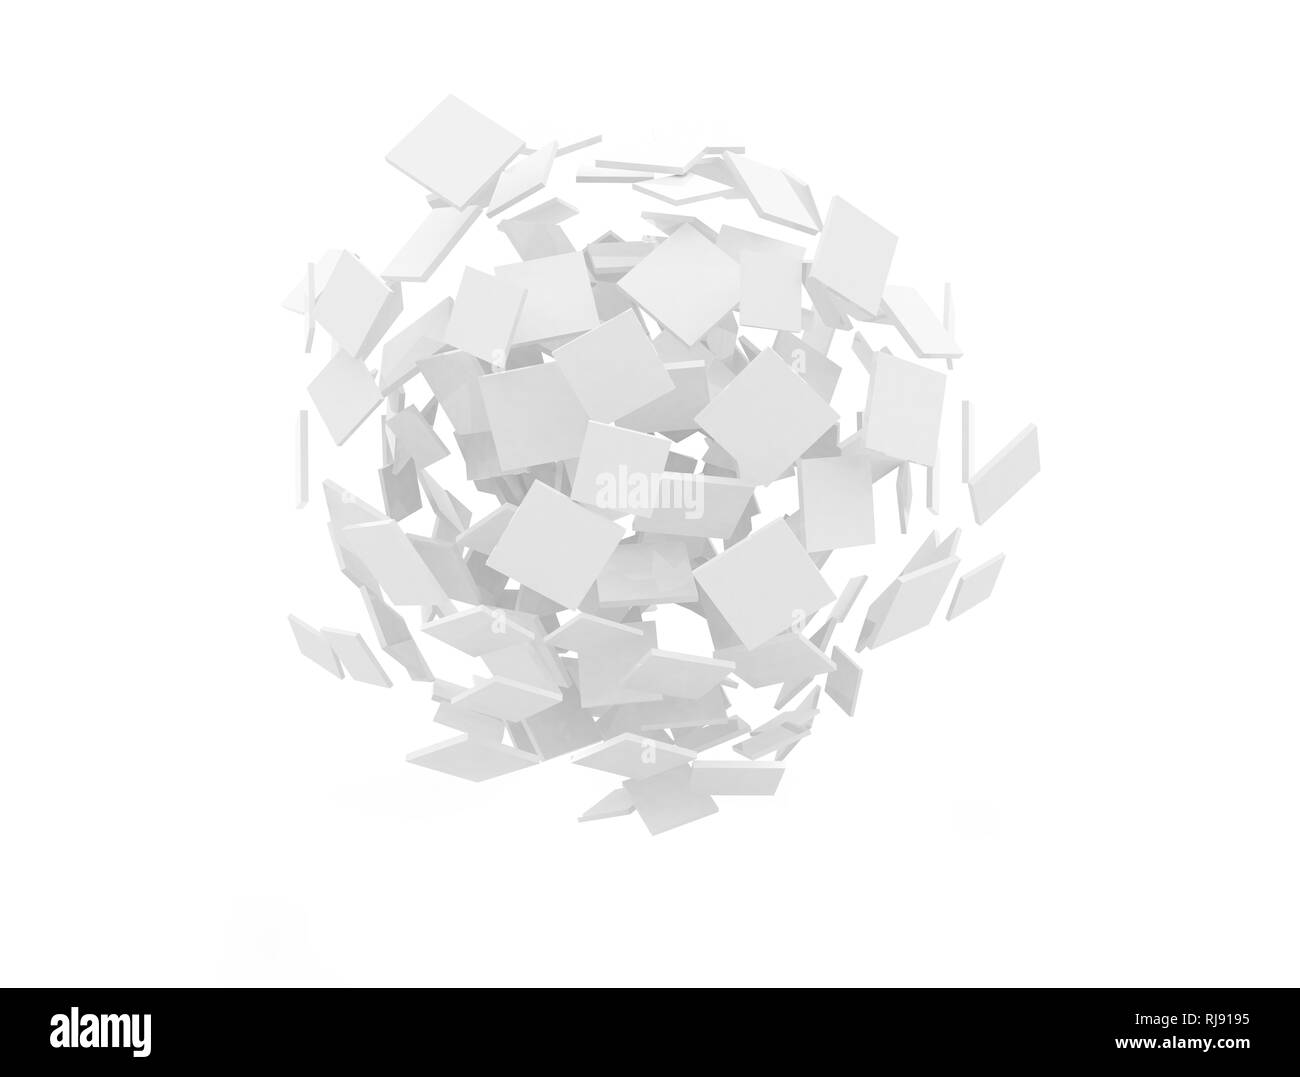 Les carrés blancs à blanc qui se chevauchent dans une forme de sphère Banque D'Images